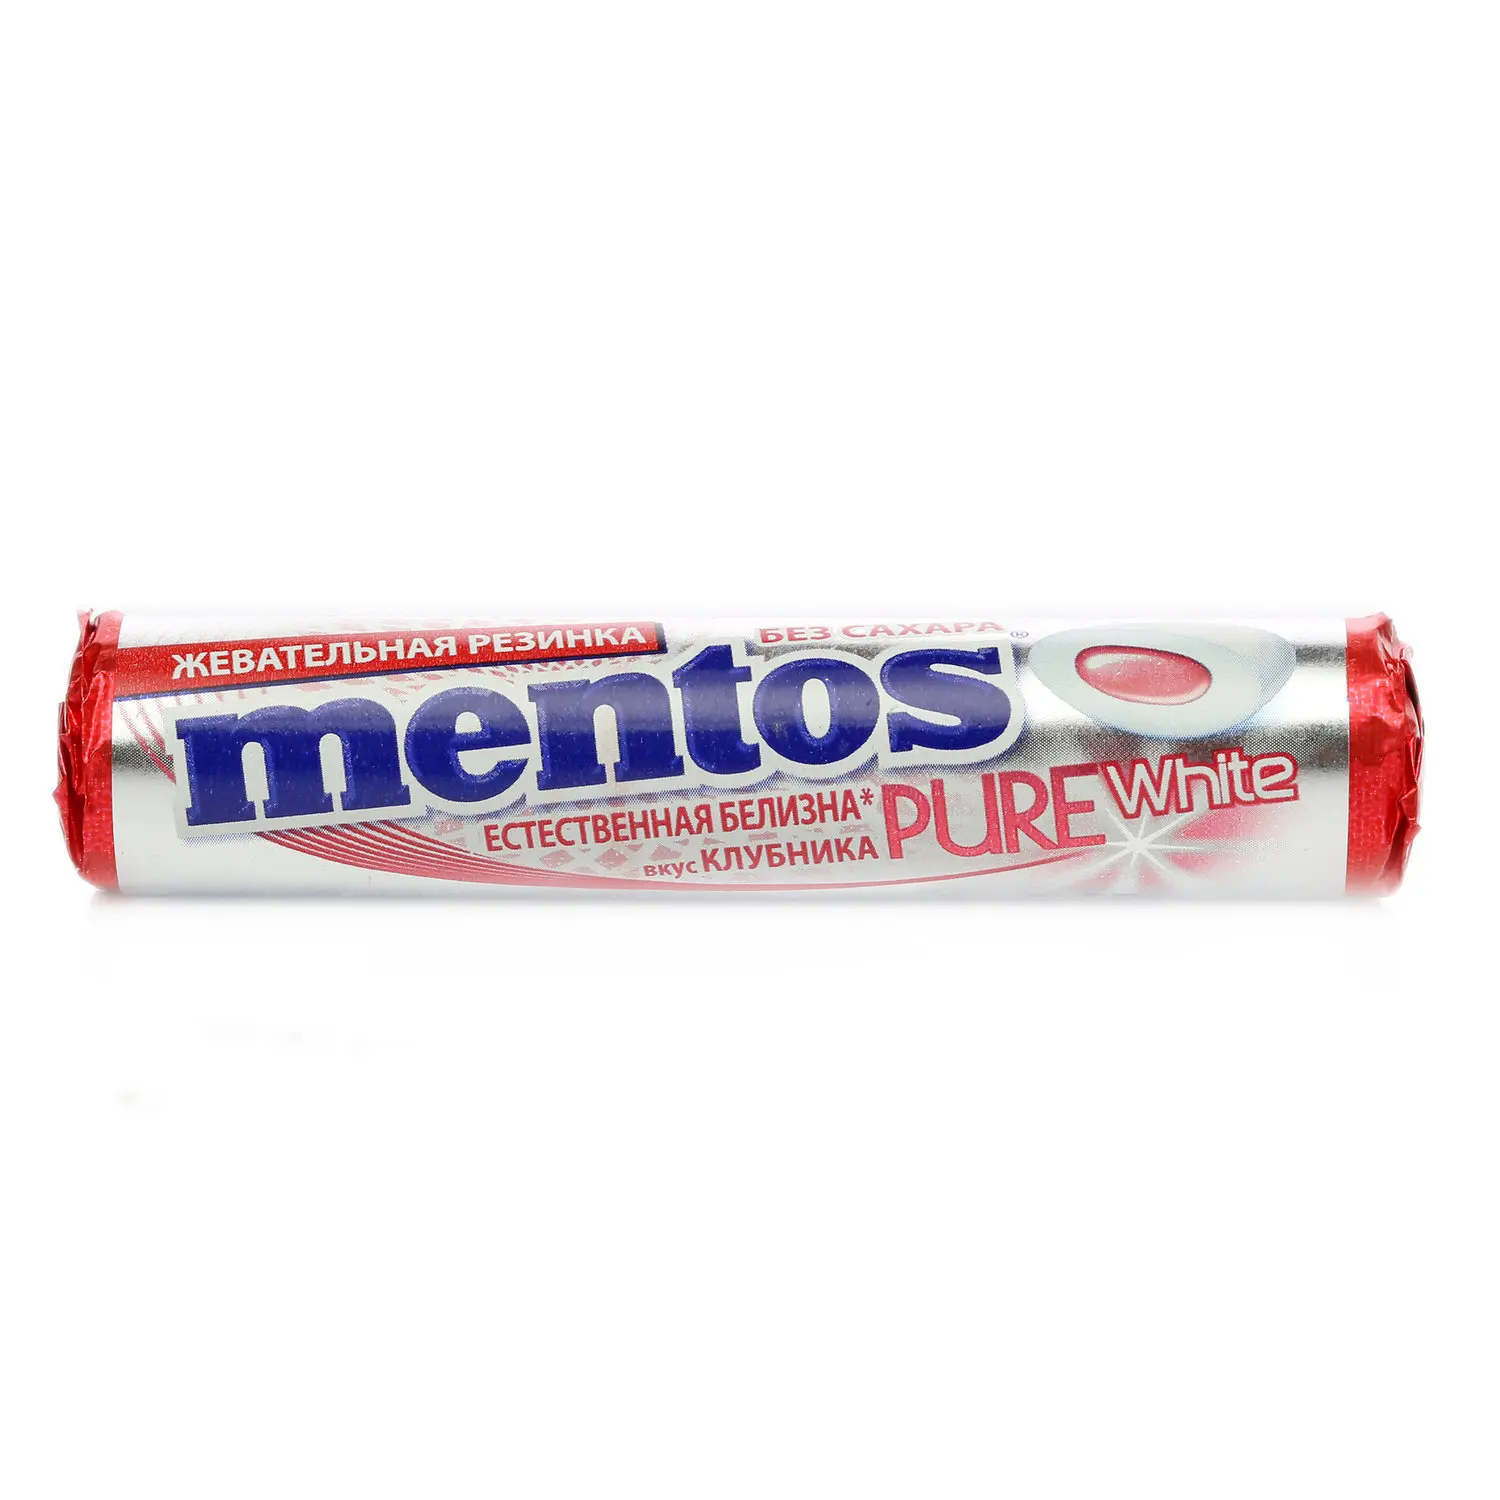 Жевательная резинка Mentos Pure White со вкусом клубники ТМ (Ментос) - купить по выгодной